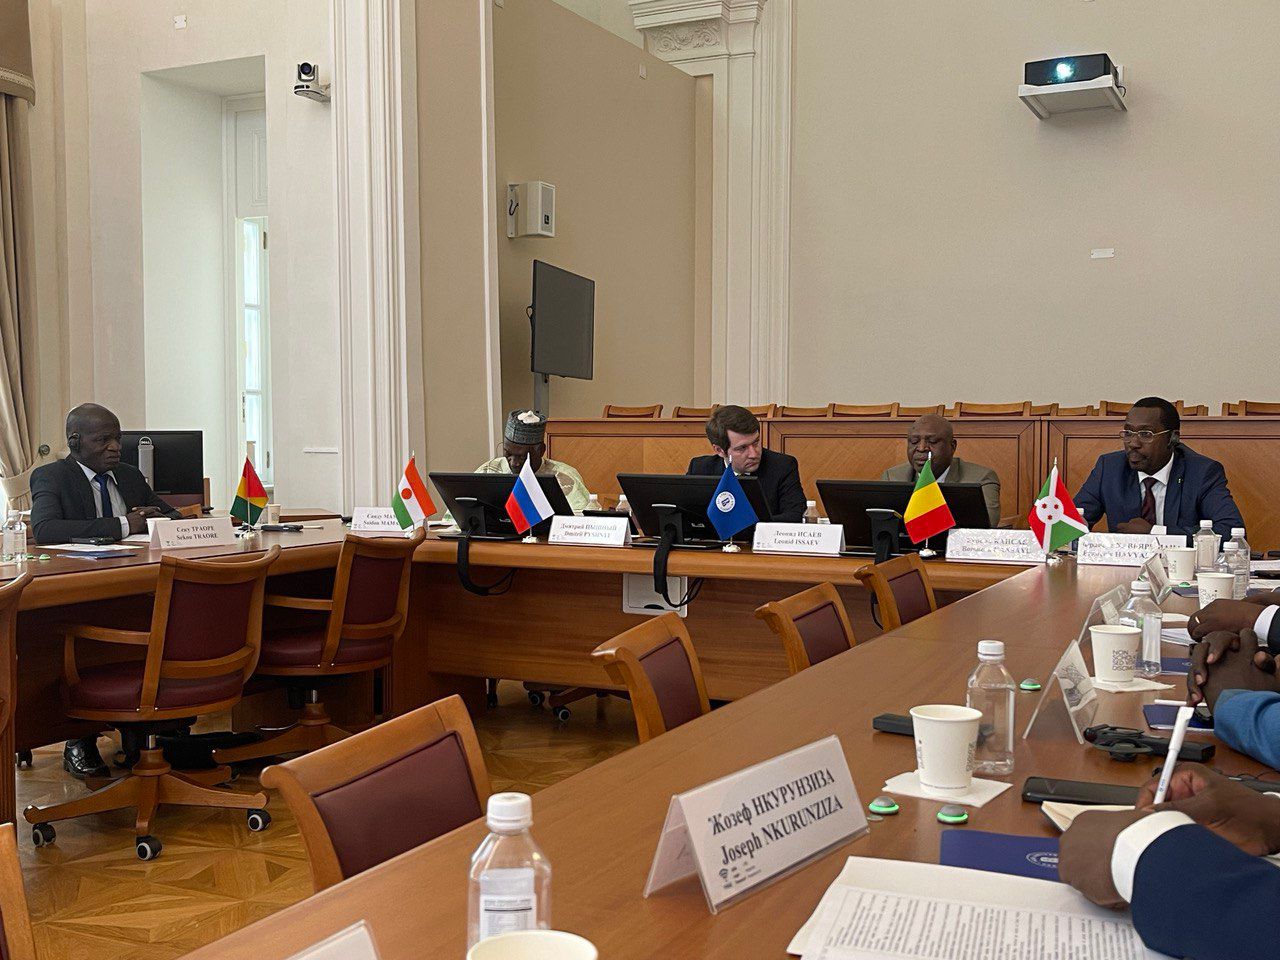 Образовательный обмен России и Африки обсудили на стратсессии в ВШЭ